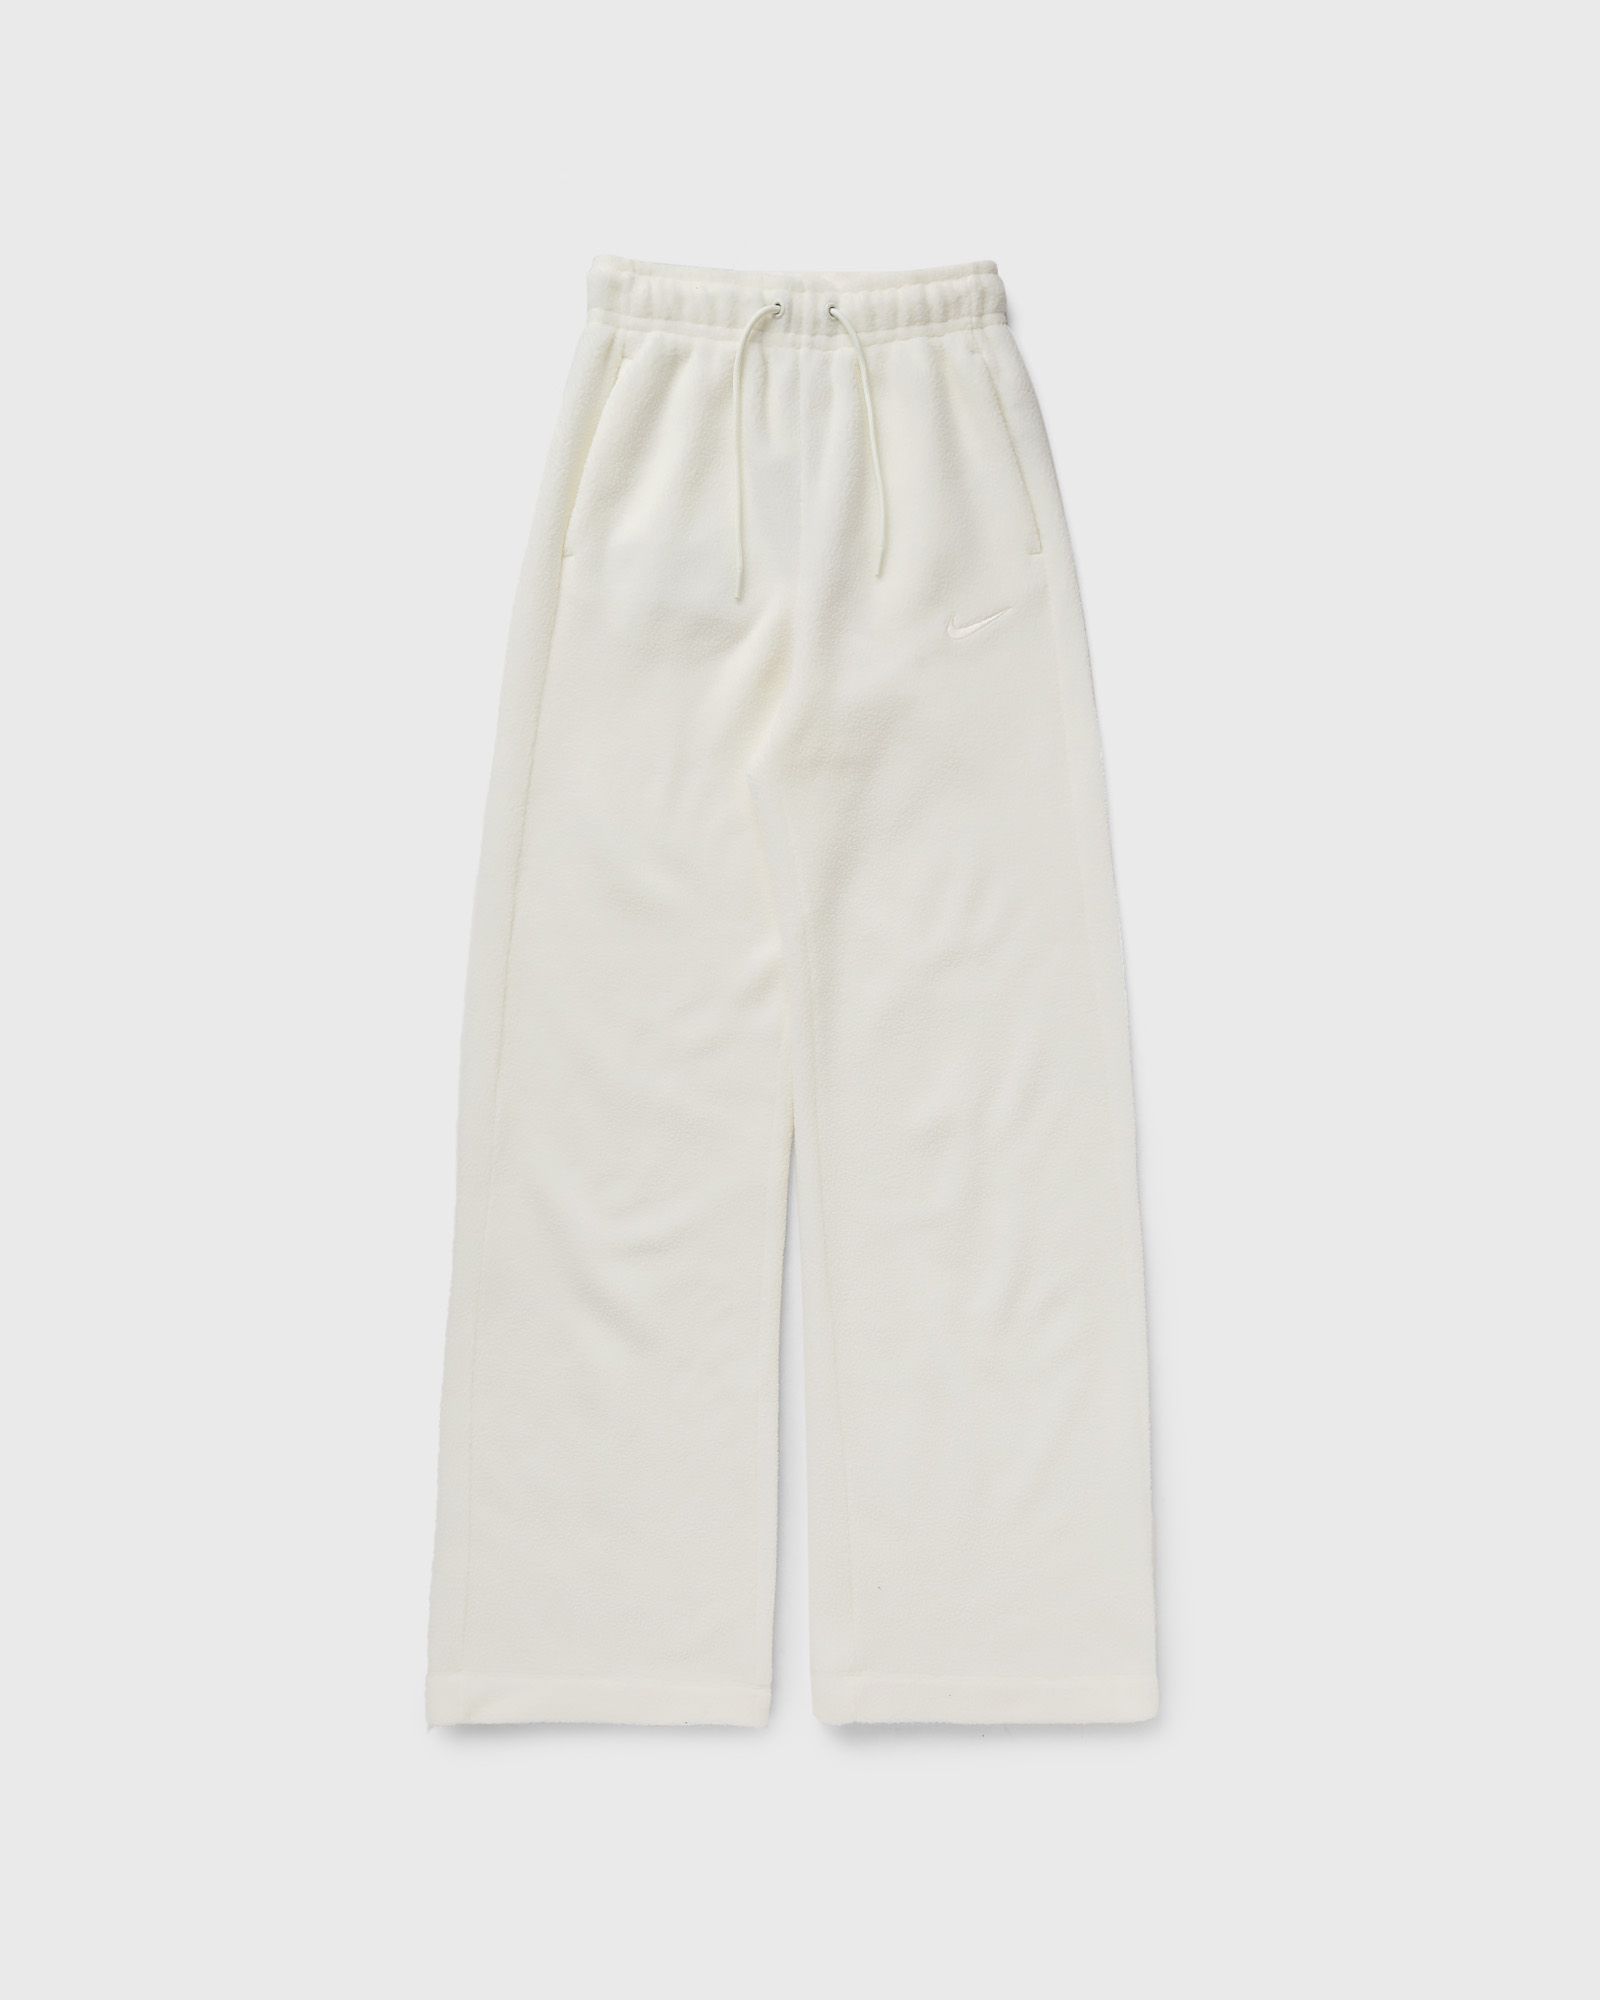 Nike - sportswear plush women's pants women sweatpants white in größe:s